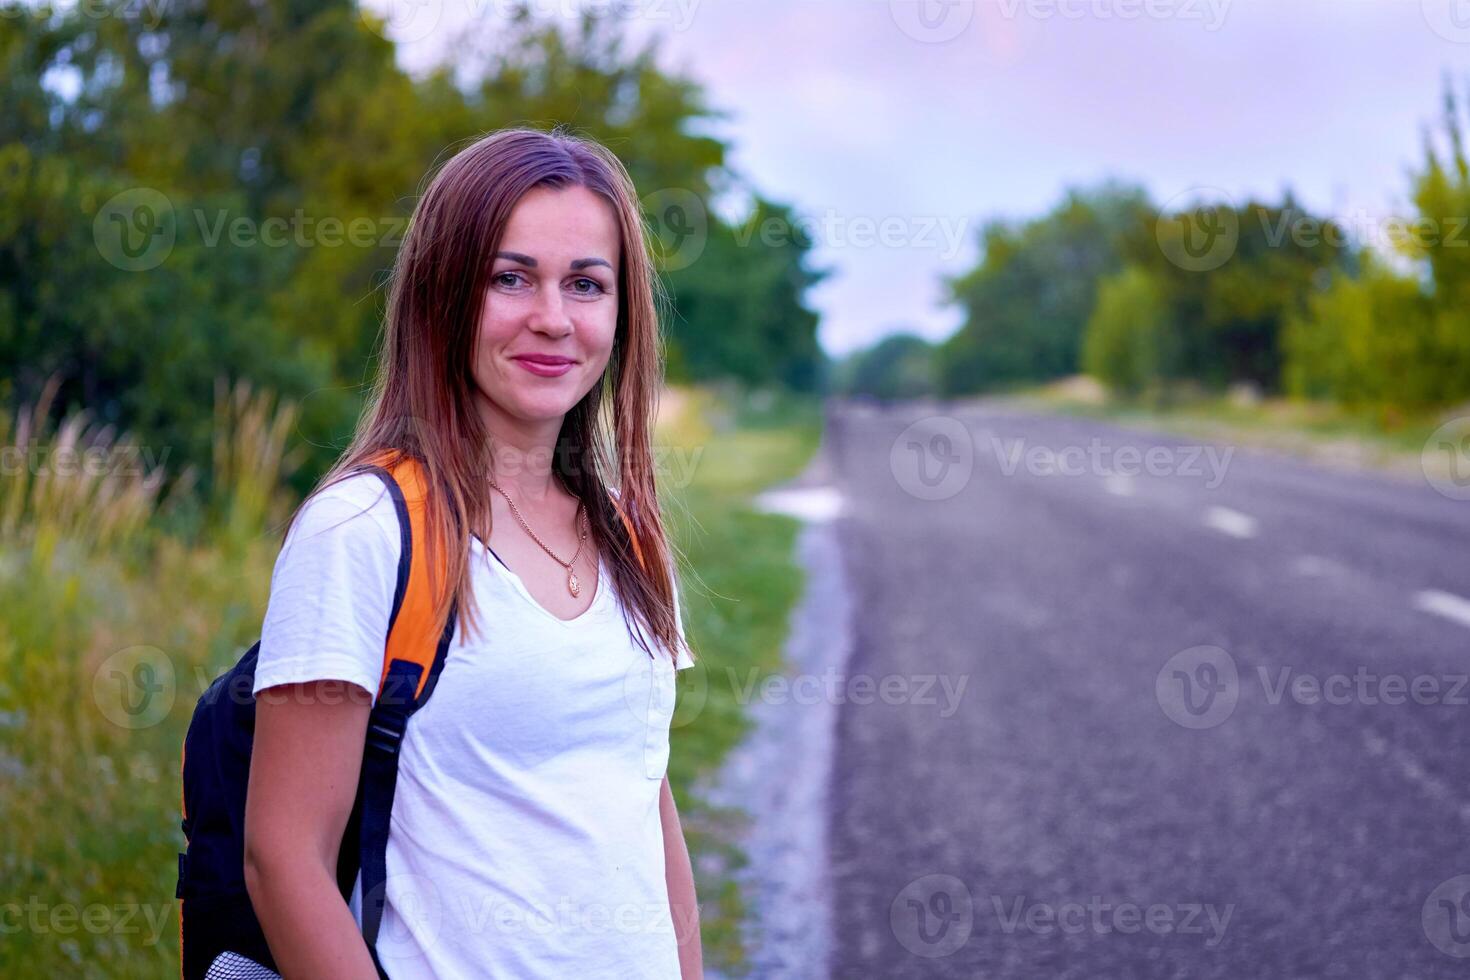 jong op reis vrolijk meisje staat aan het wachten door de asfalt weg met bomen foto